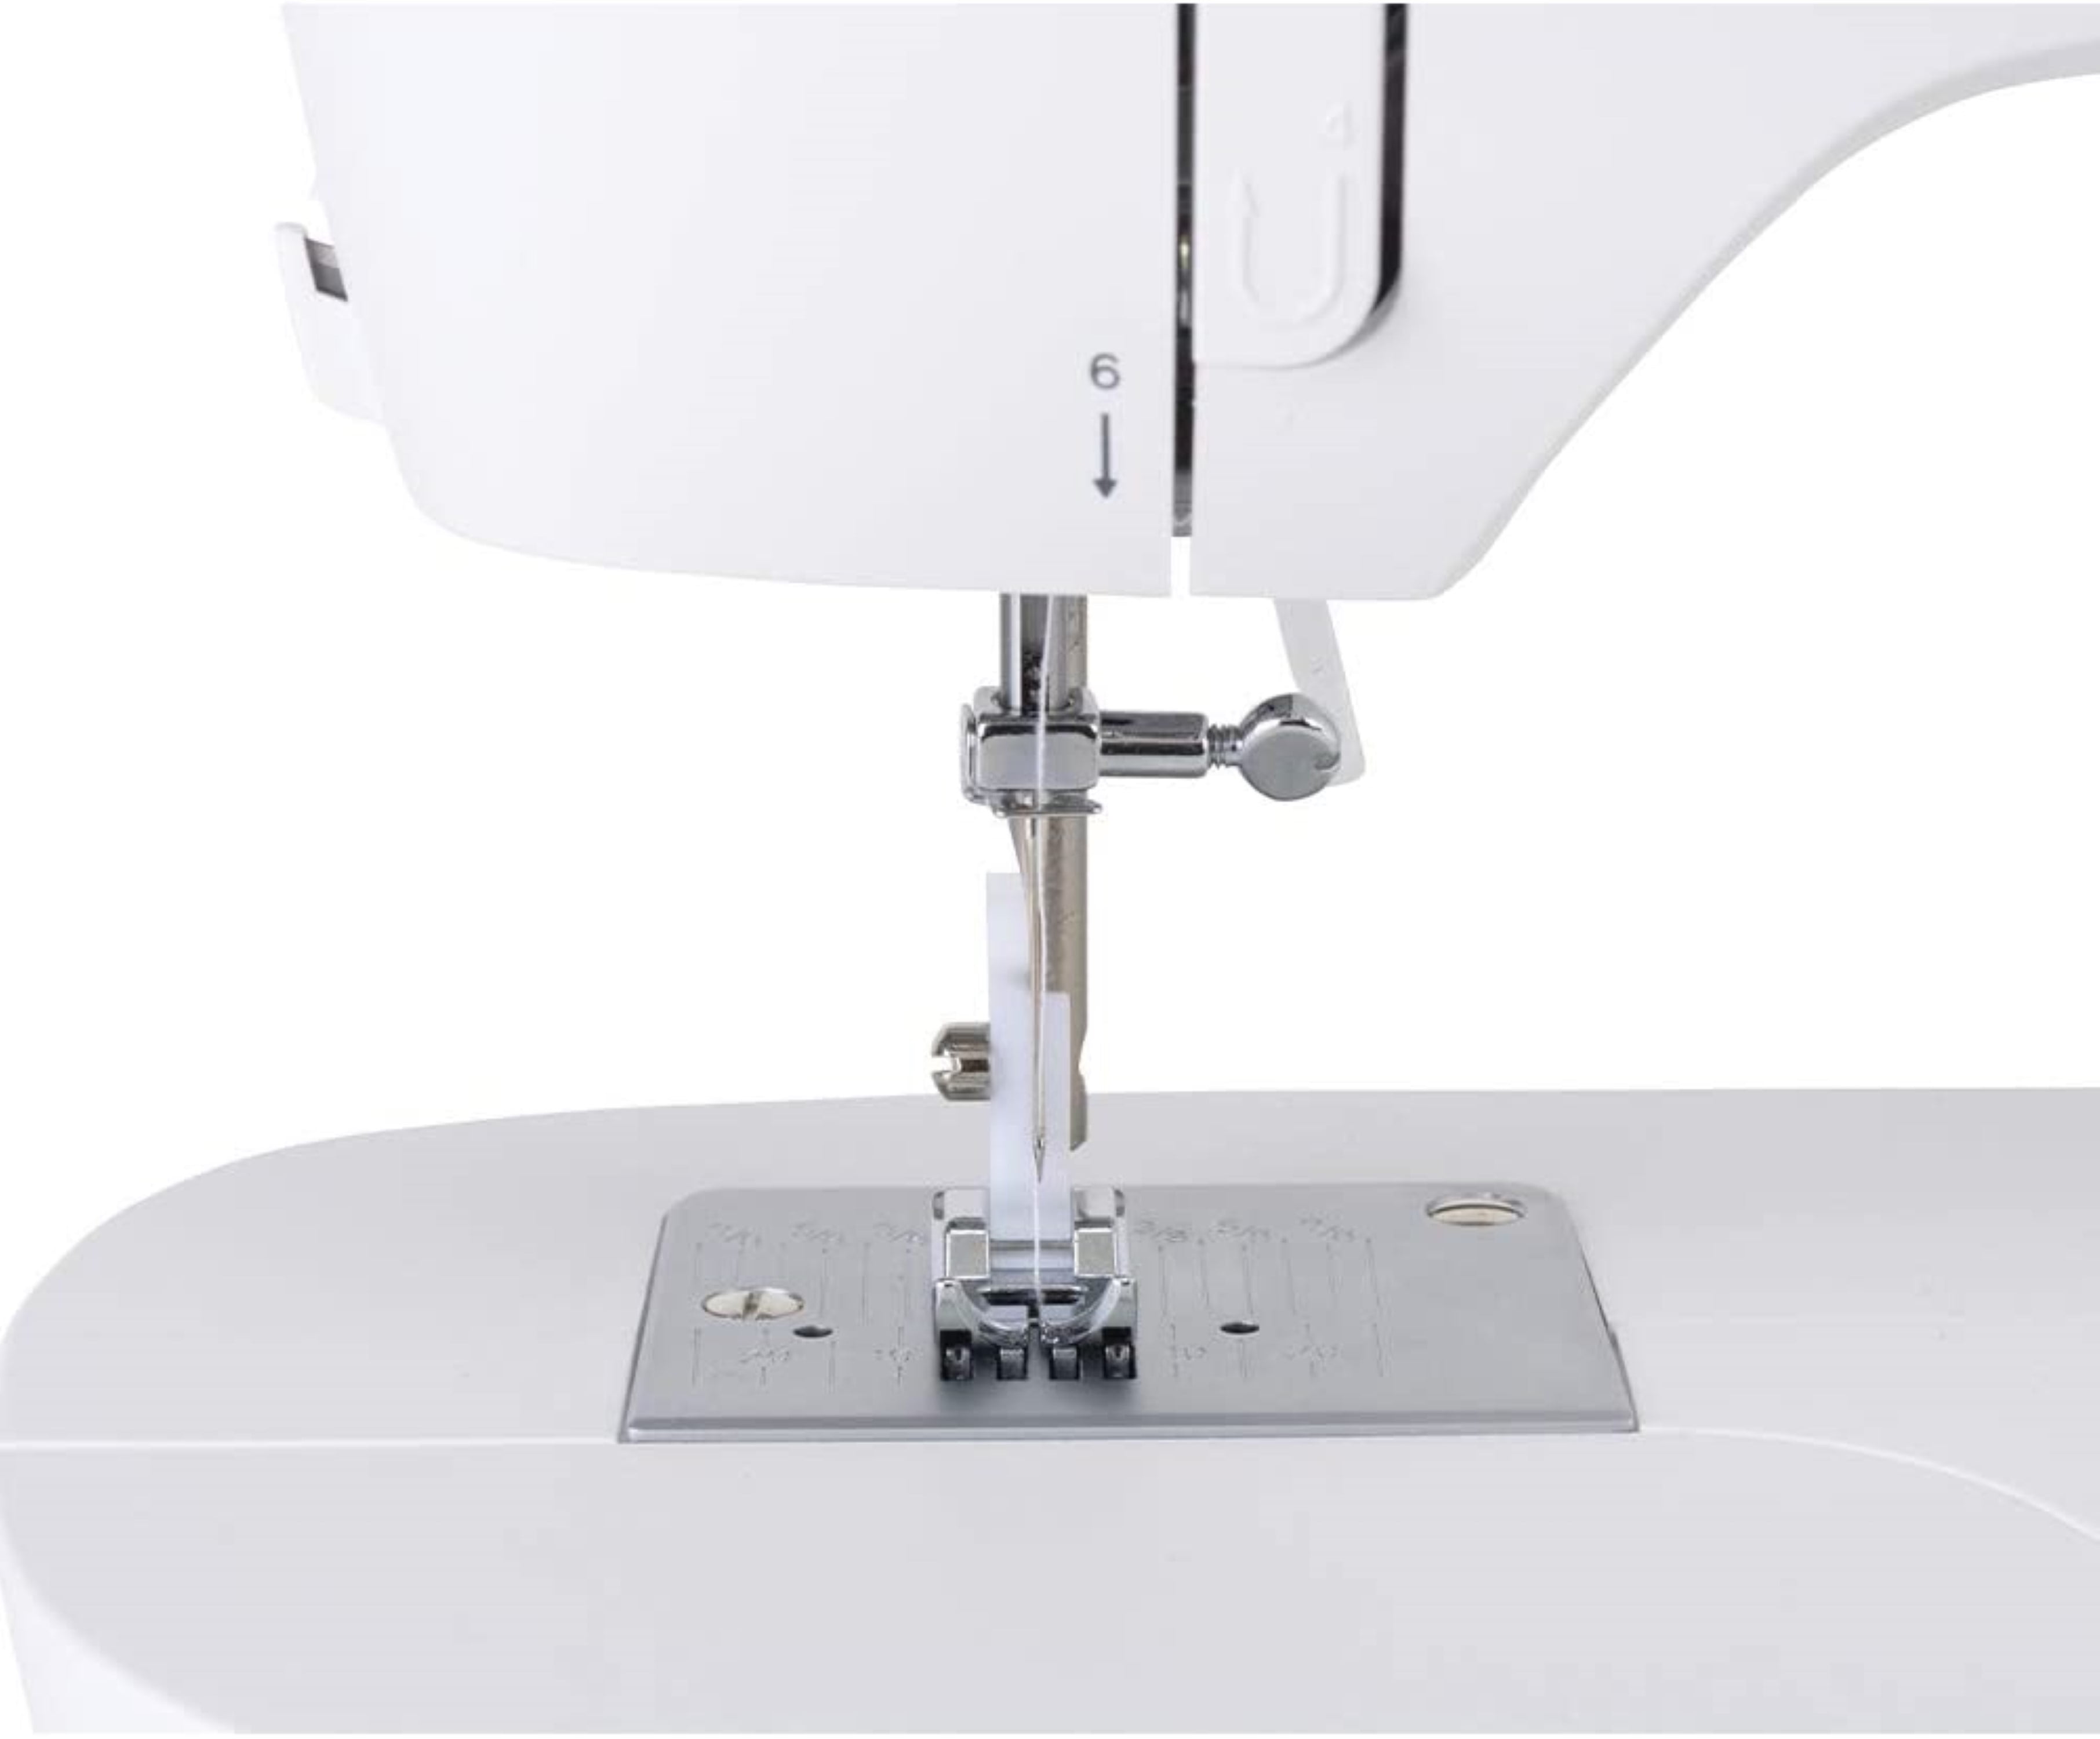 Singer M1500 Sewing Machine with Bonus Sewing Kit